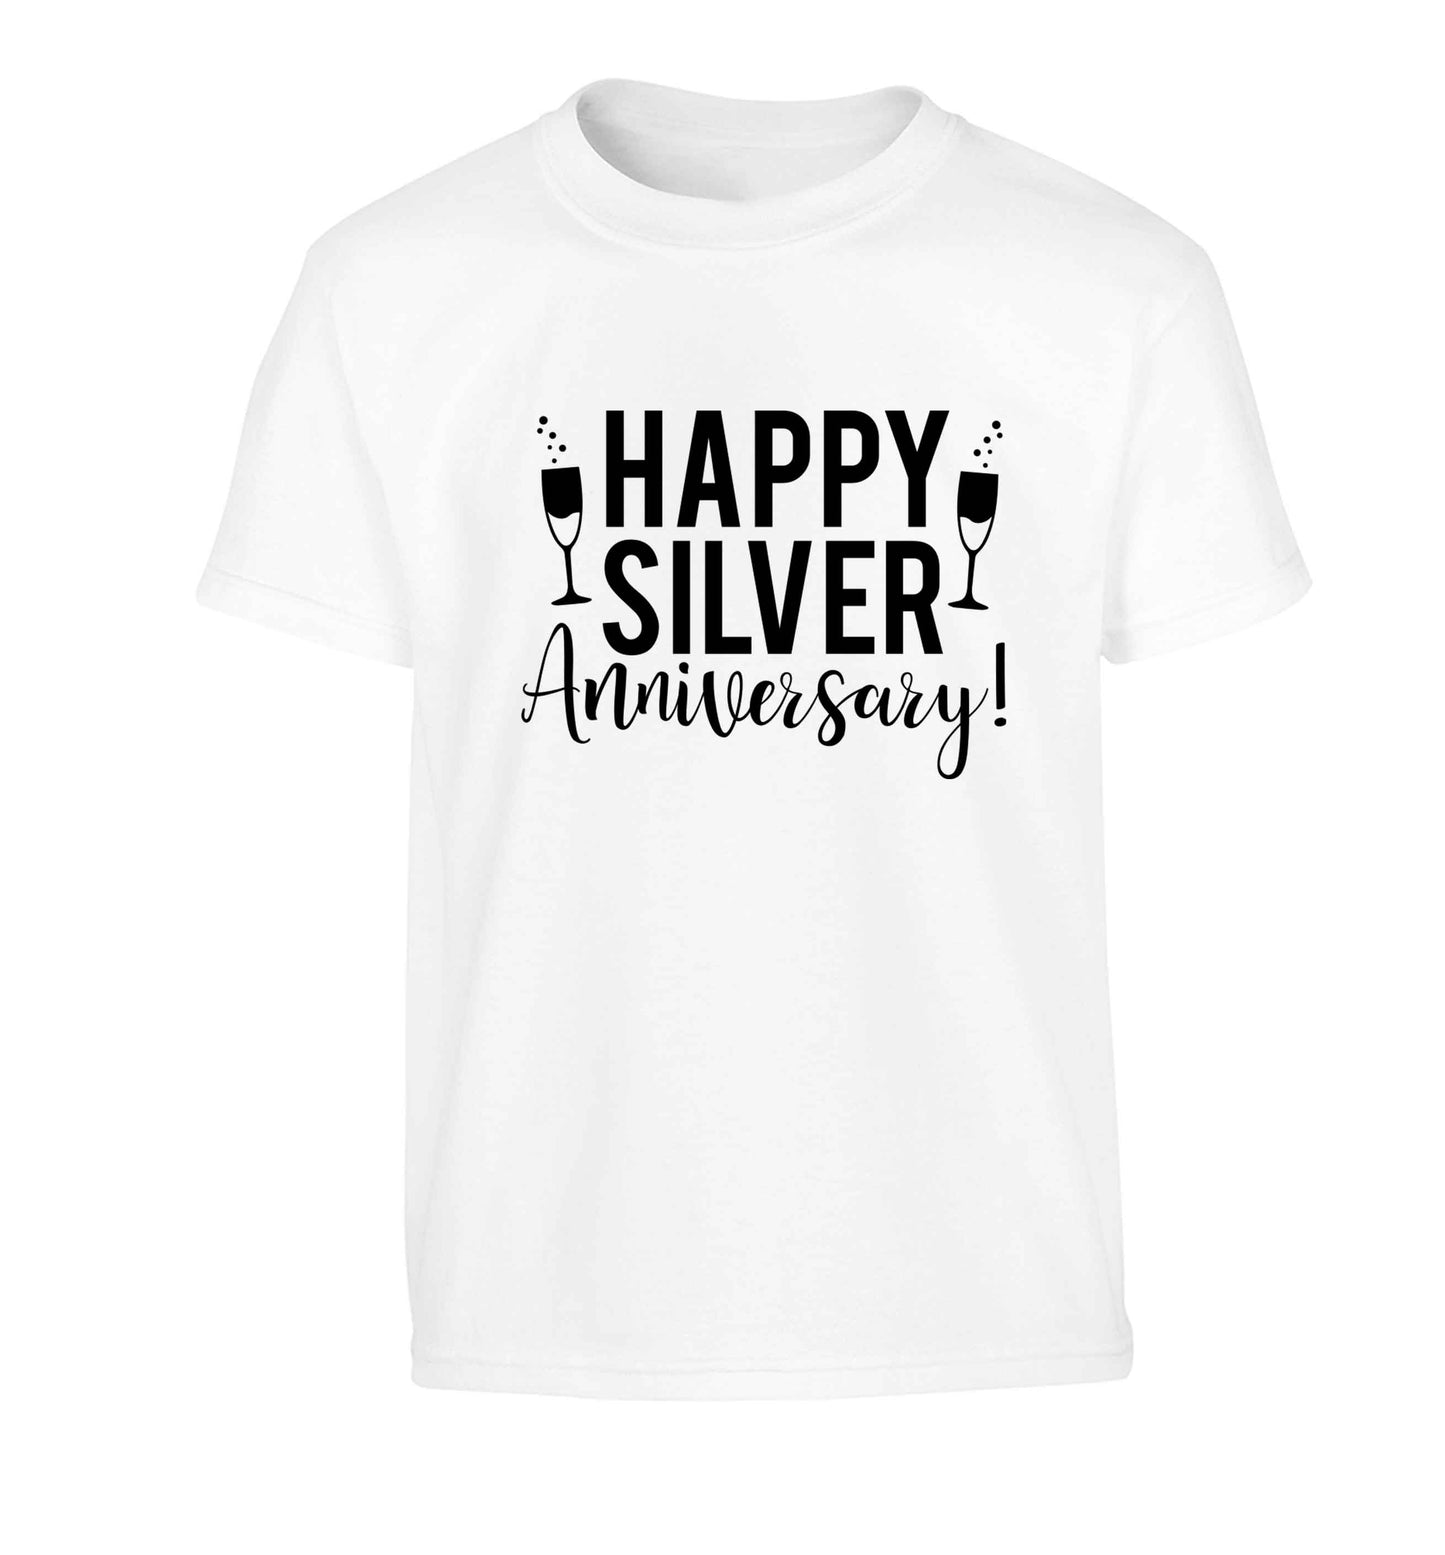 Happy silver anniversary! Children's white Tshirt 12-13 Years